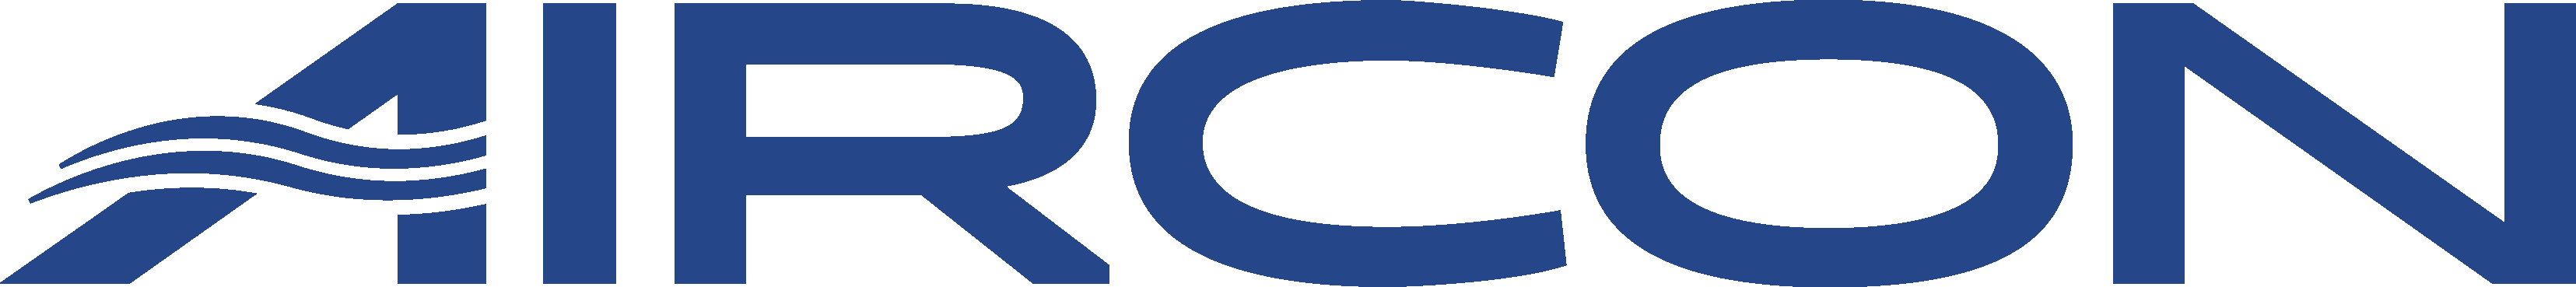 Aircon logo